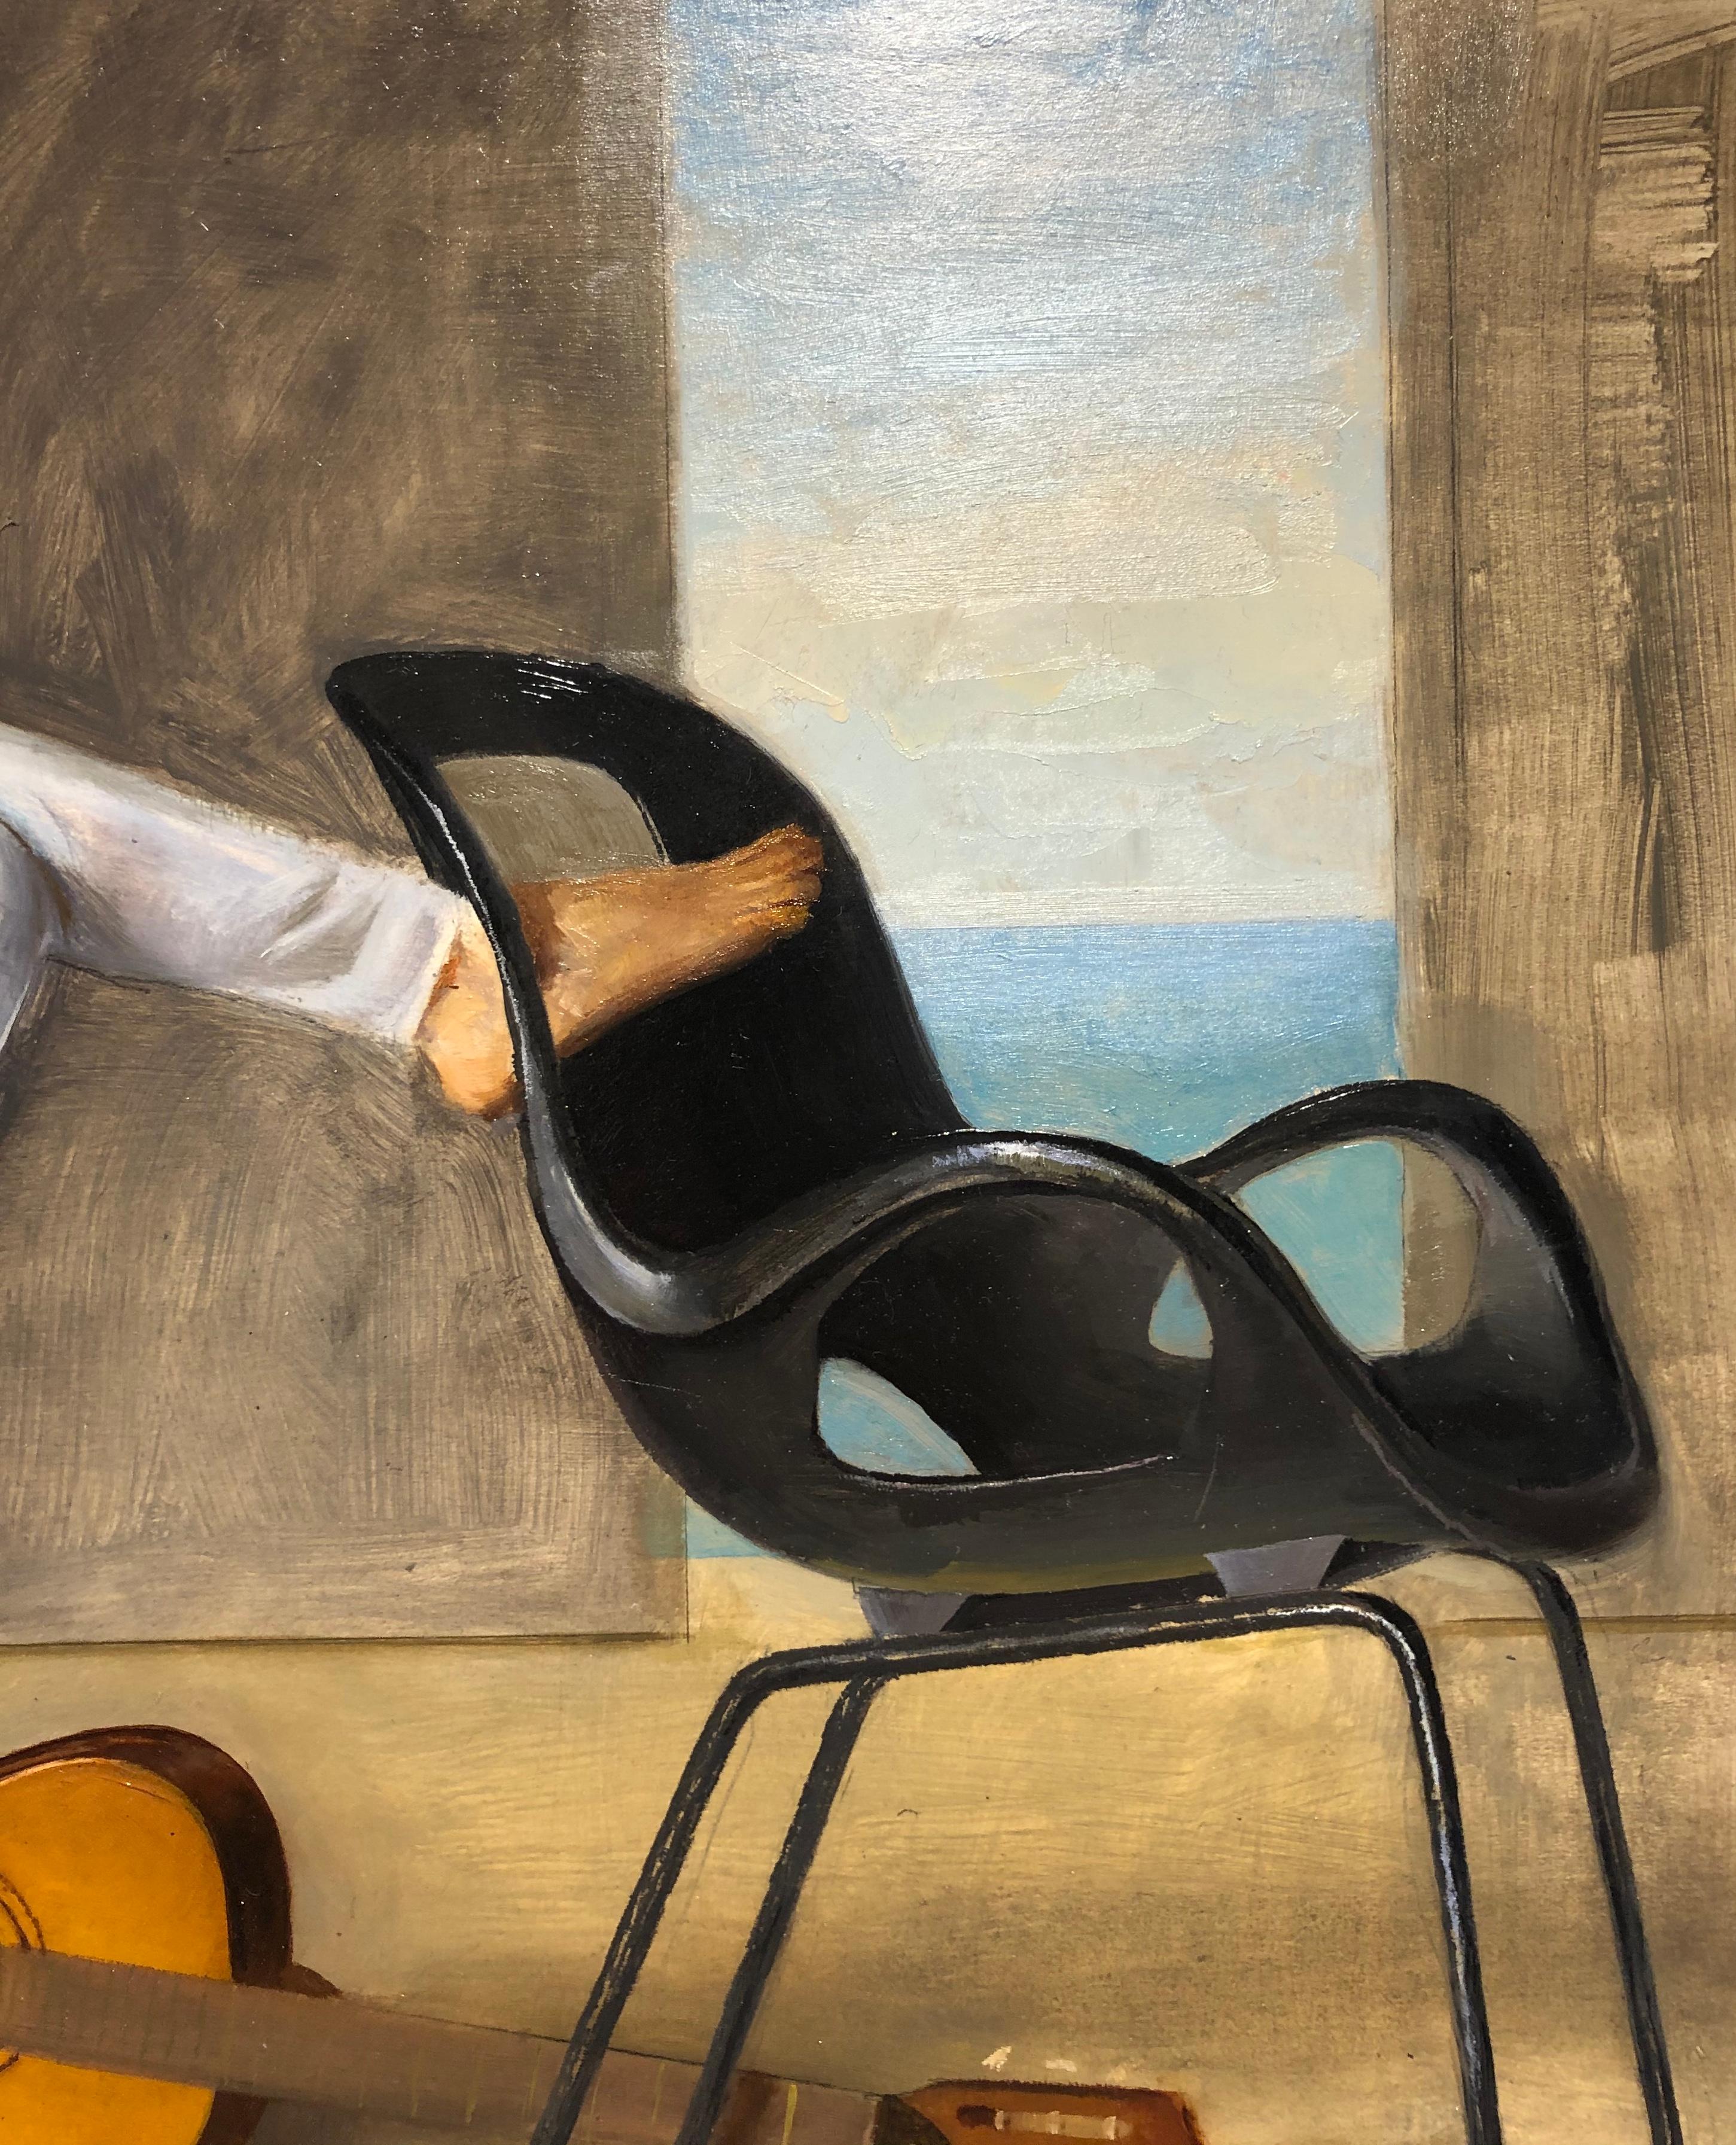 Ashley avec guitare, femme allongée sur une chaise Tom Vac, huile sur panneau d'origine - Marron Figurative Painting par Andrew S. Conklin